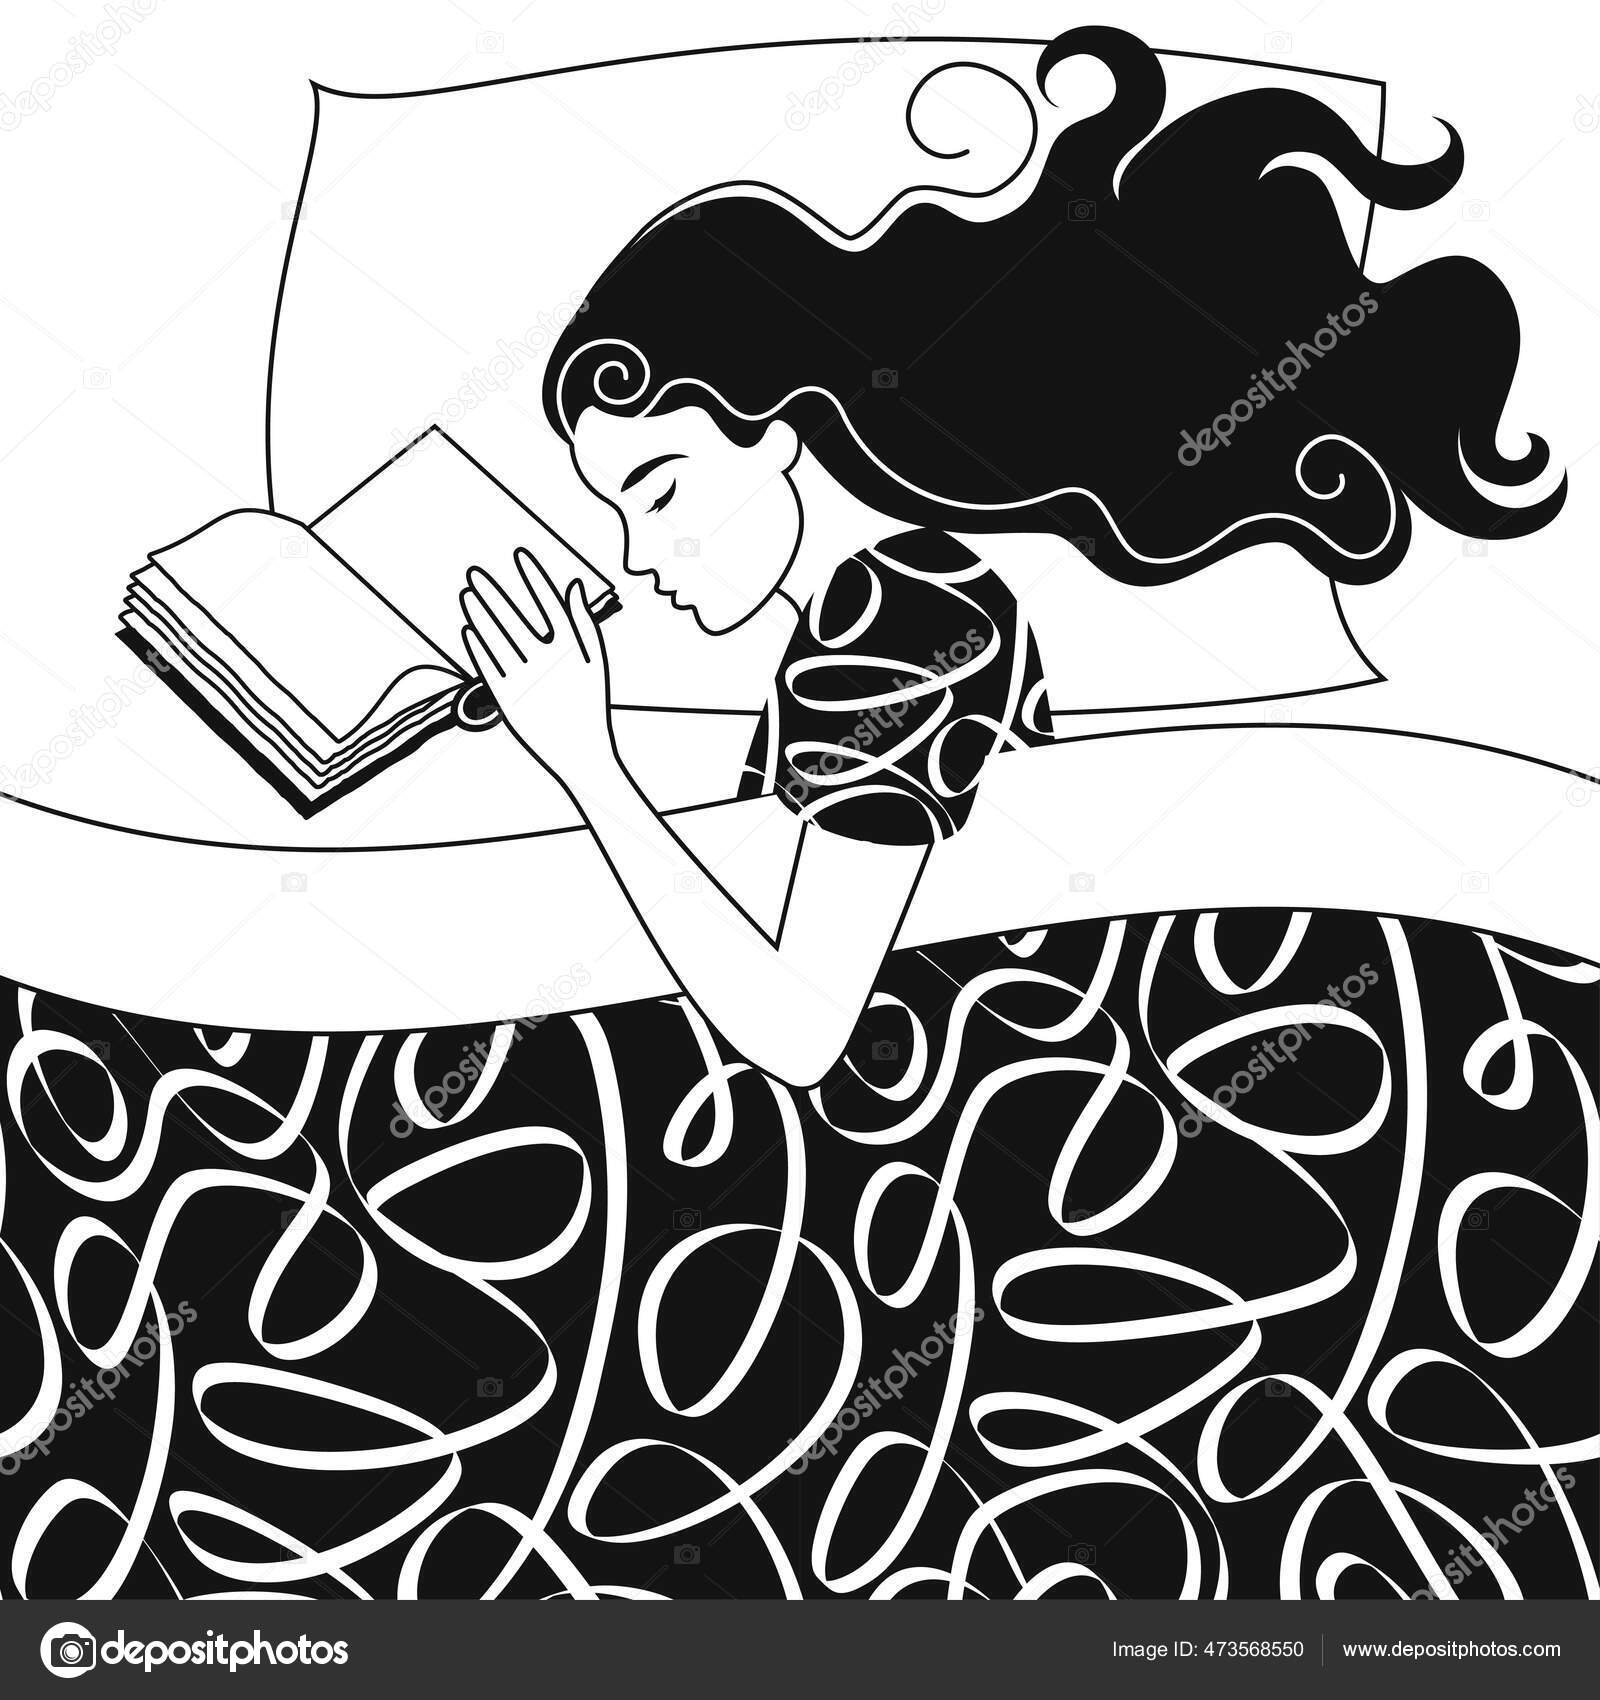 Um desenho preto e branco de uma menina com cabelo comprido.